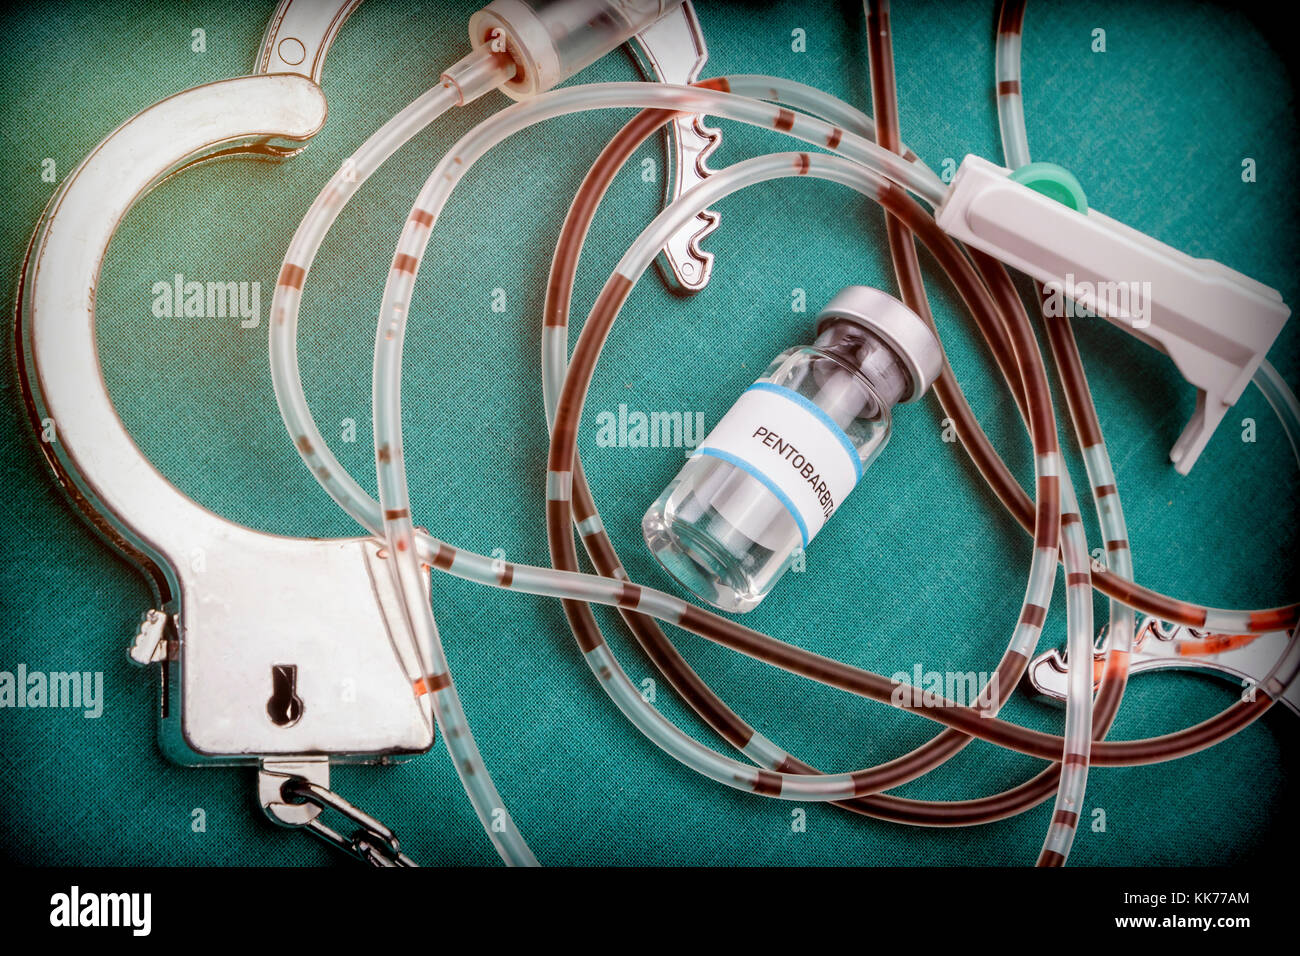 Handschellen neben einer Durchstechflasche von Pentobarbital und Tropfbewässerung Ausrüstung mit Spuren von Blut, Konzept der Todesstrafe, konzeptionelle Bild Stockfoto